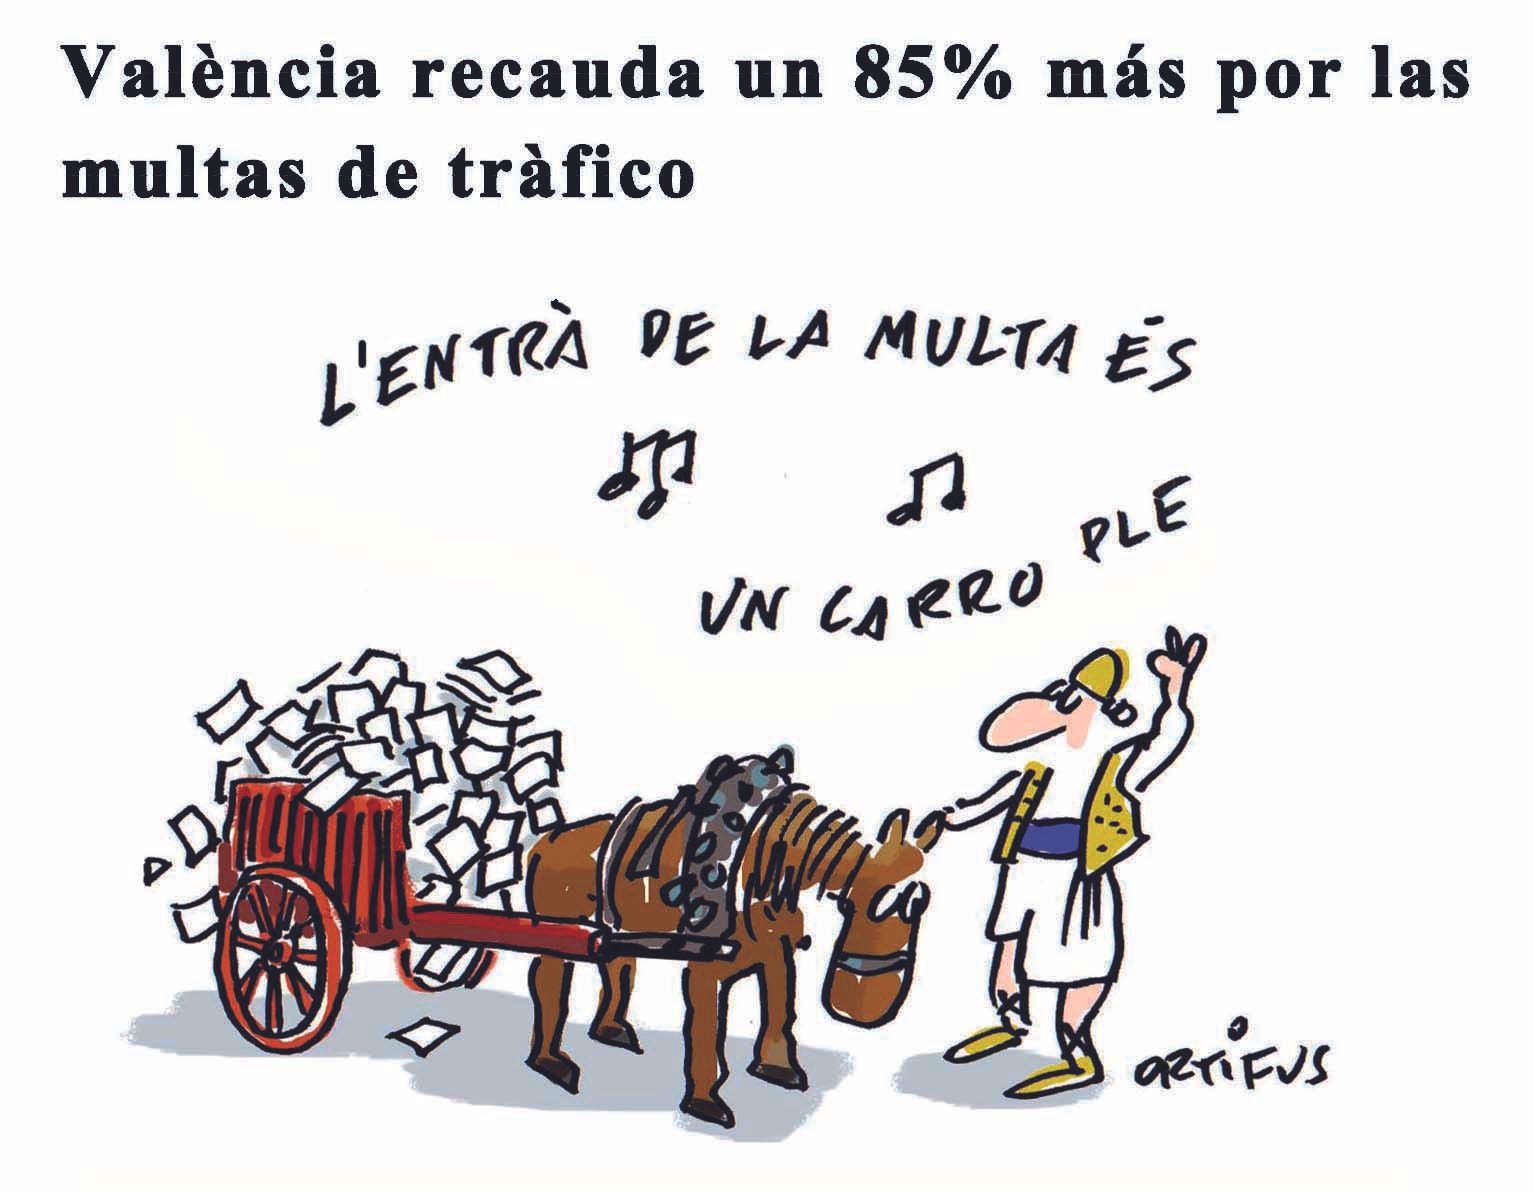 València recauda un 85% más por las multas de tráfico